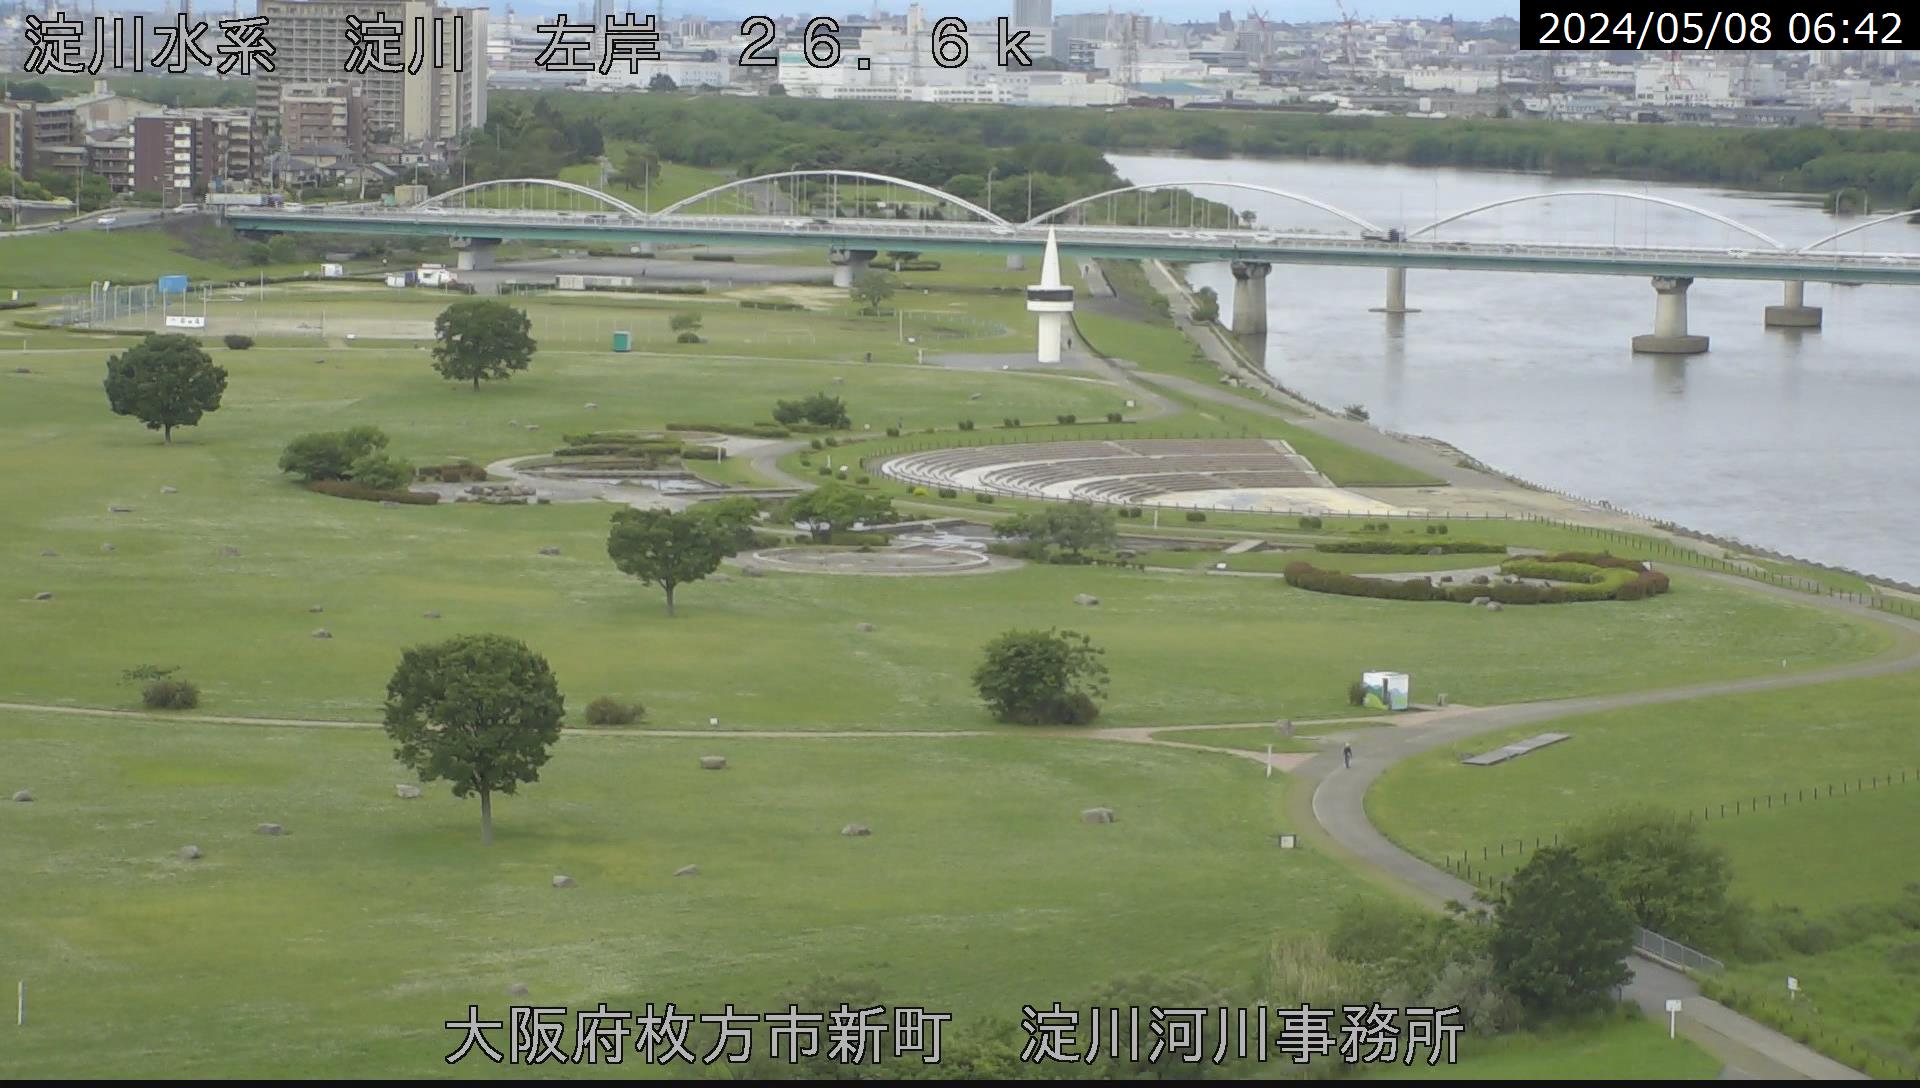 【防災情報】淀川のライブカメラ映像・水位情報